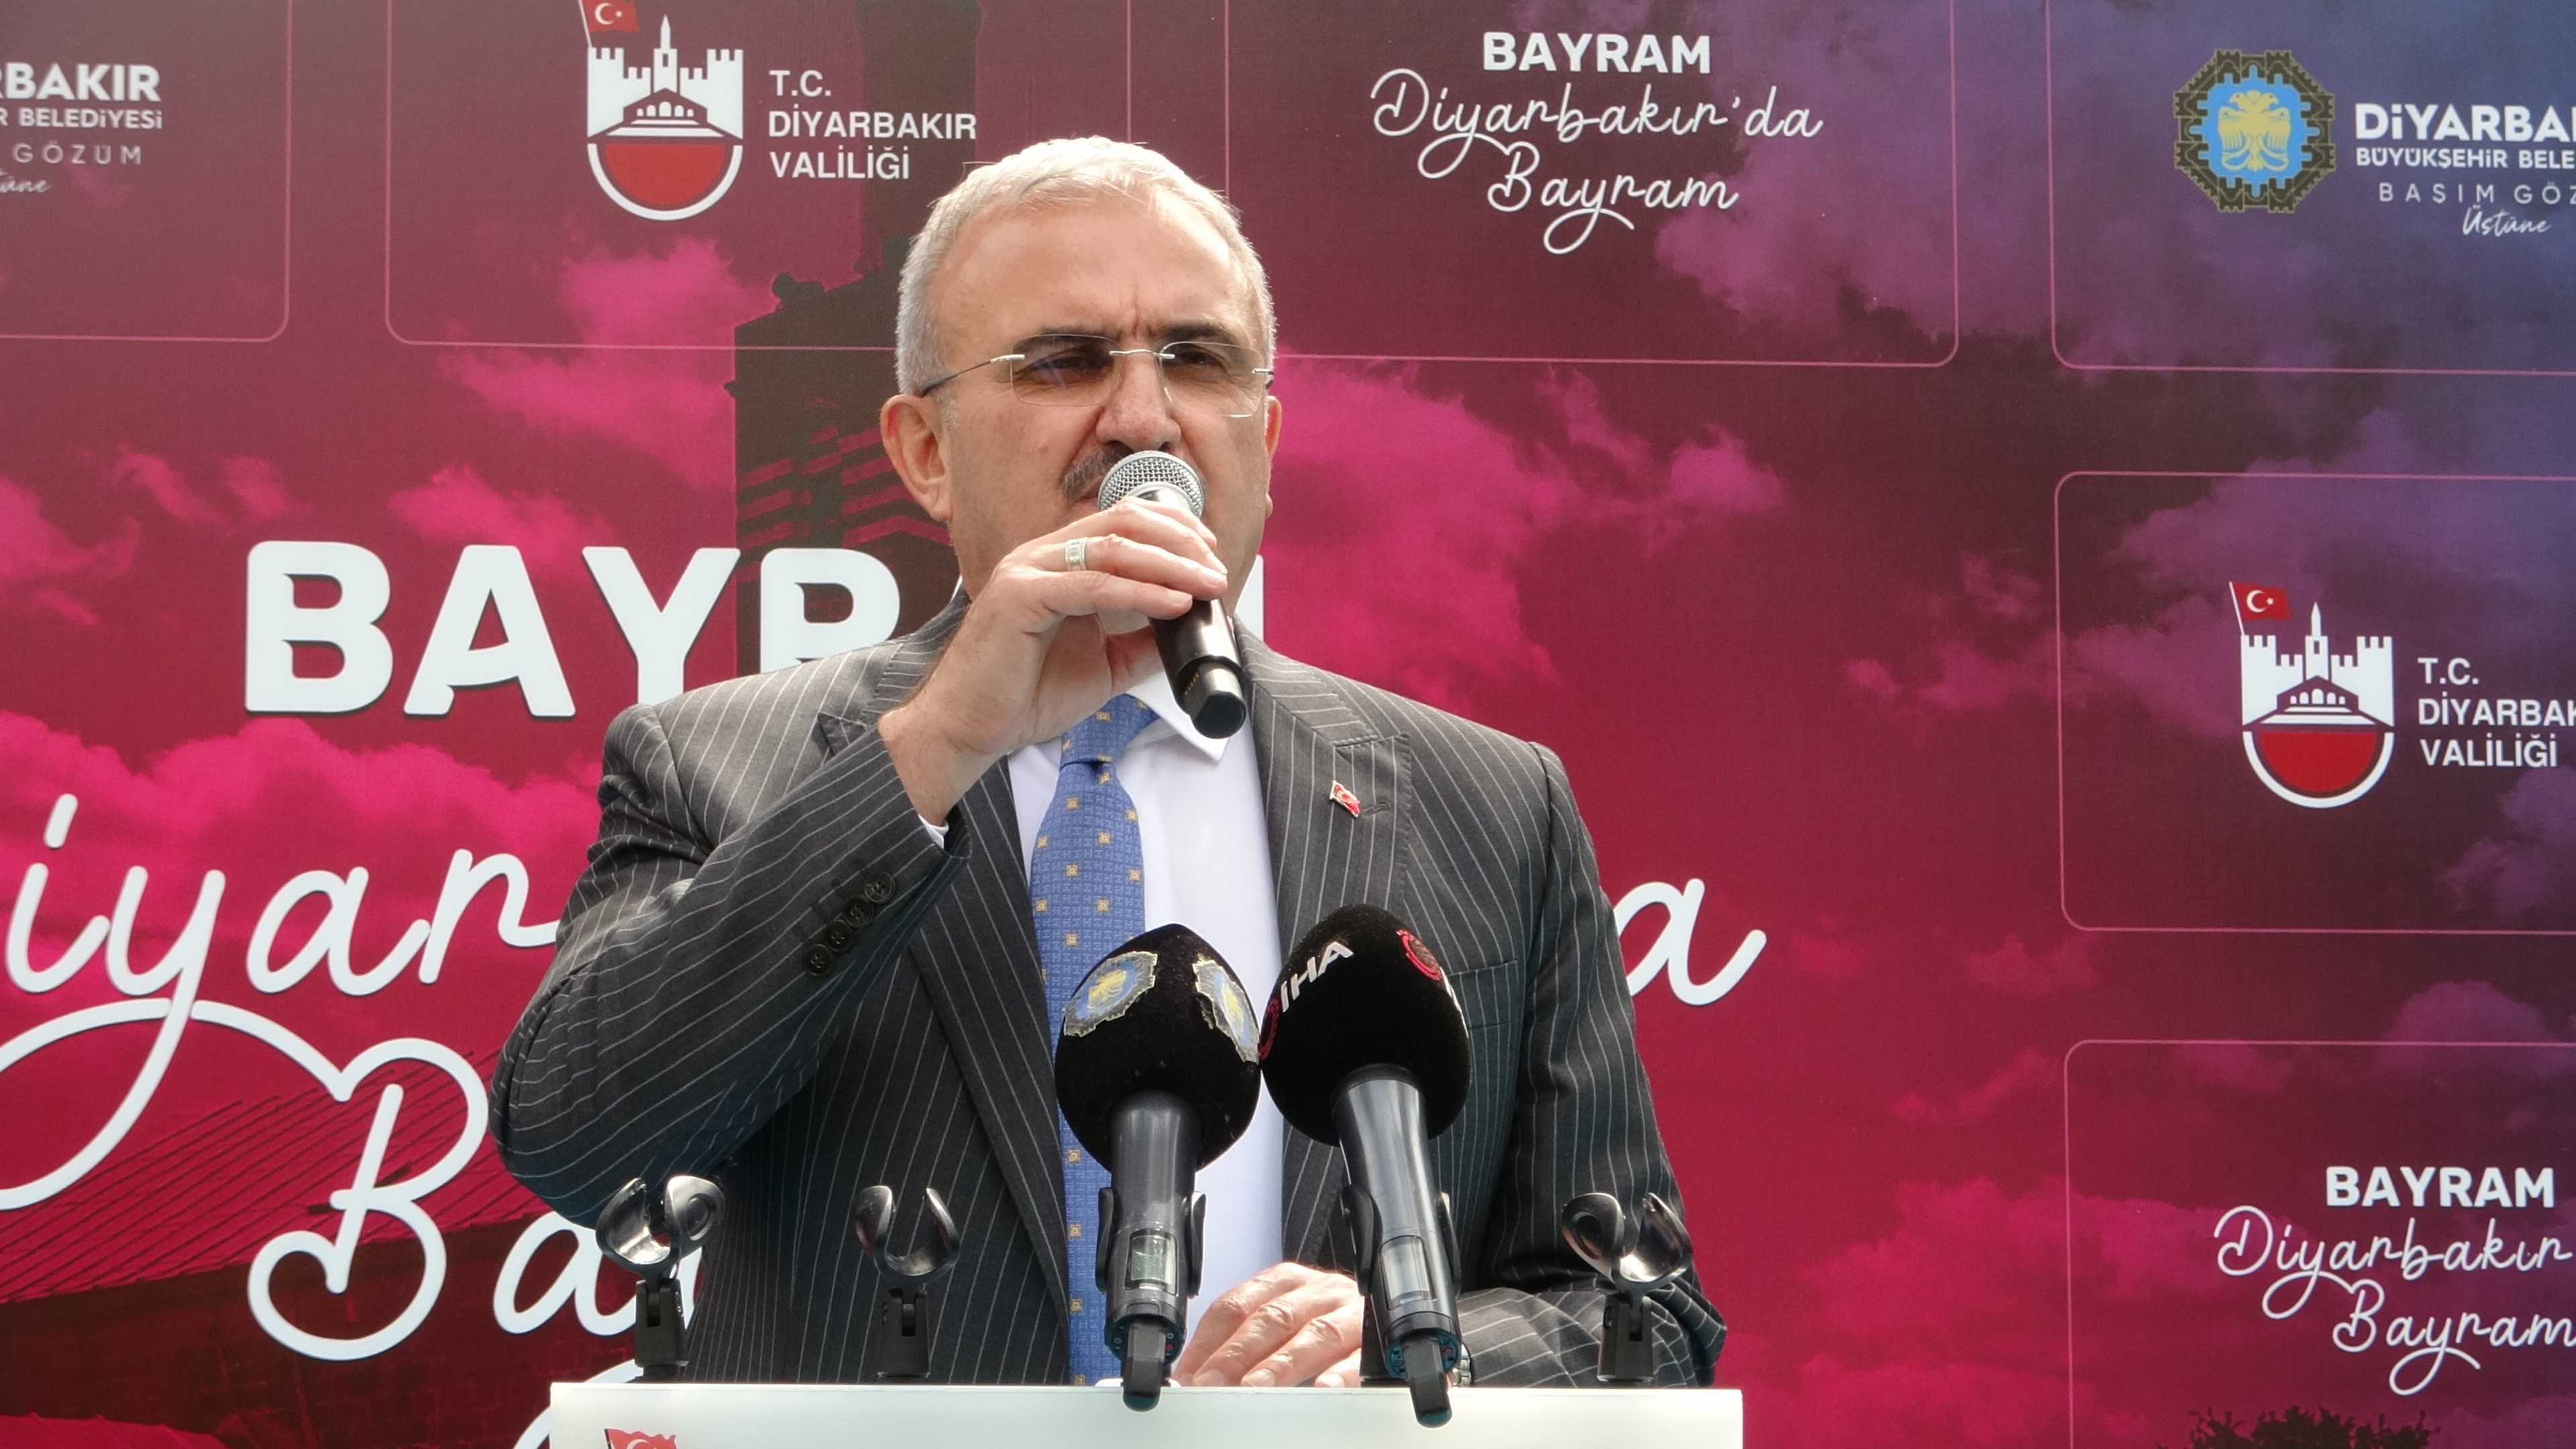 Diyarbakır Valisi: Sorun sadece terör değil